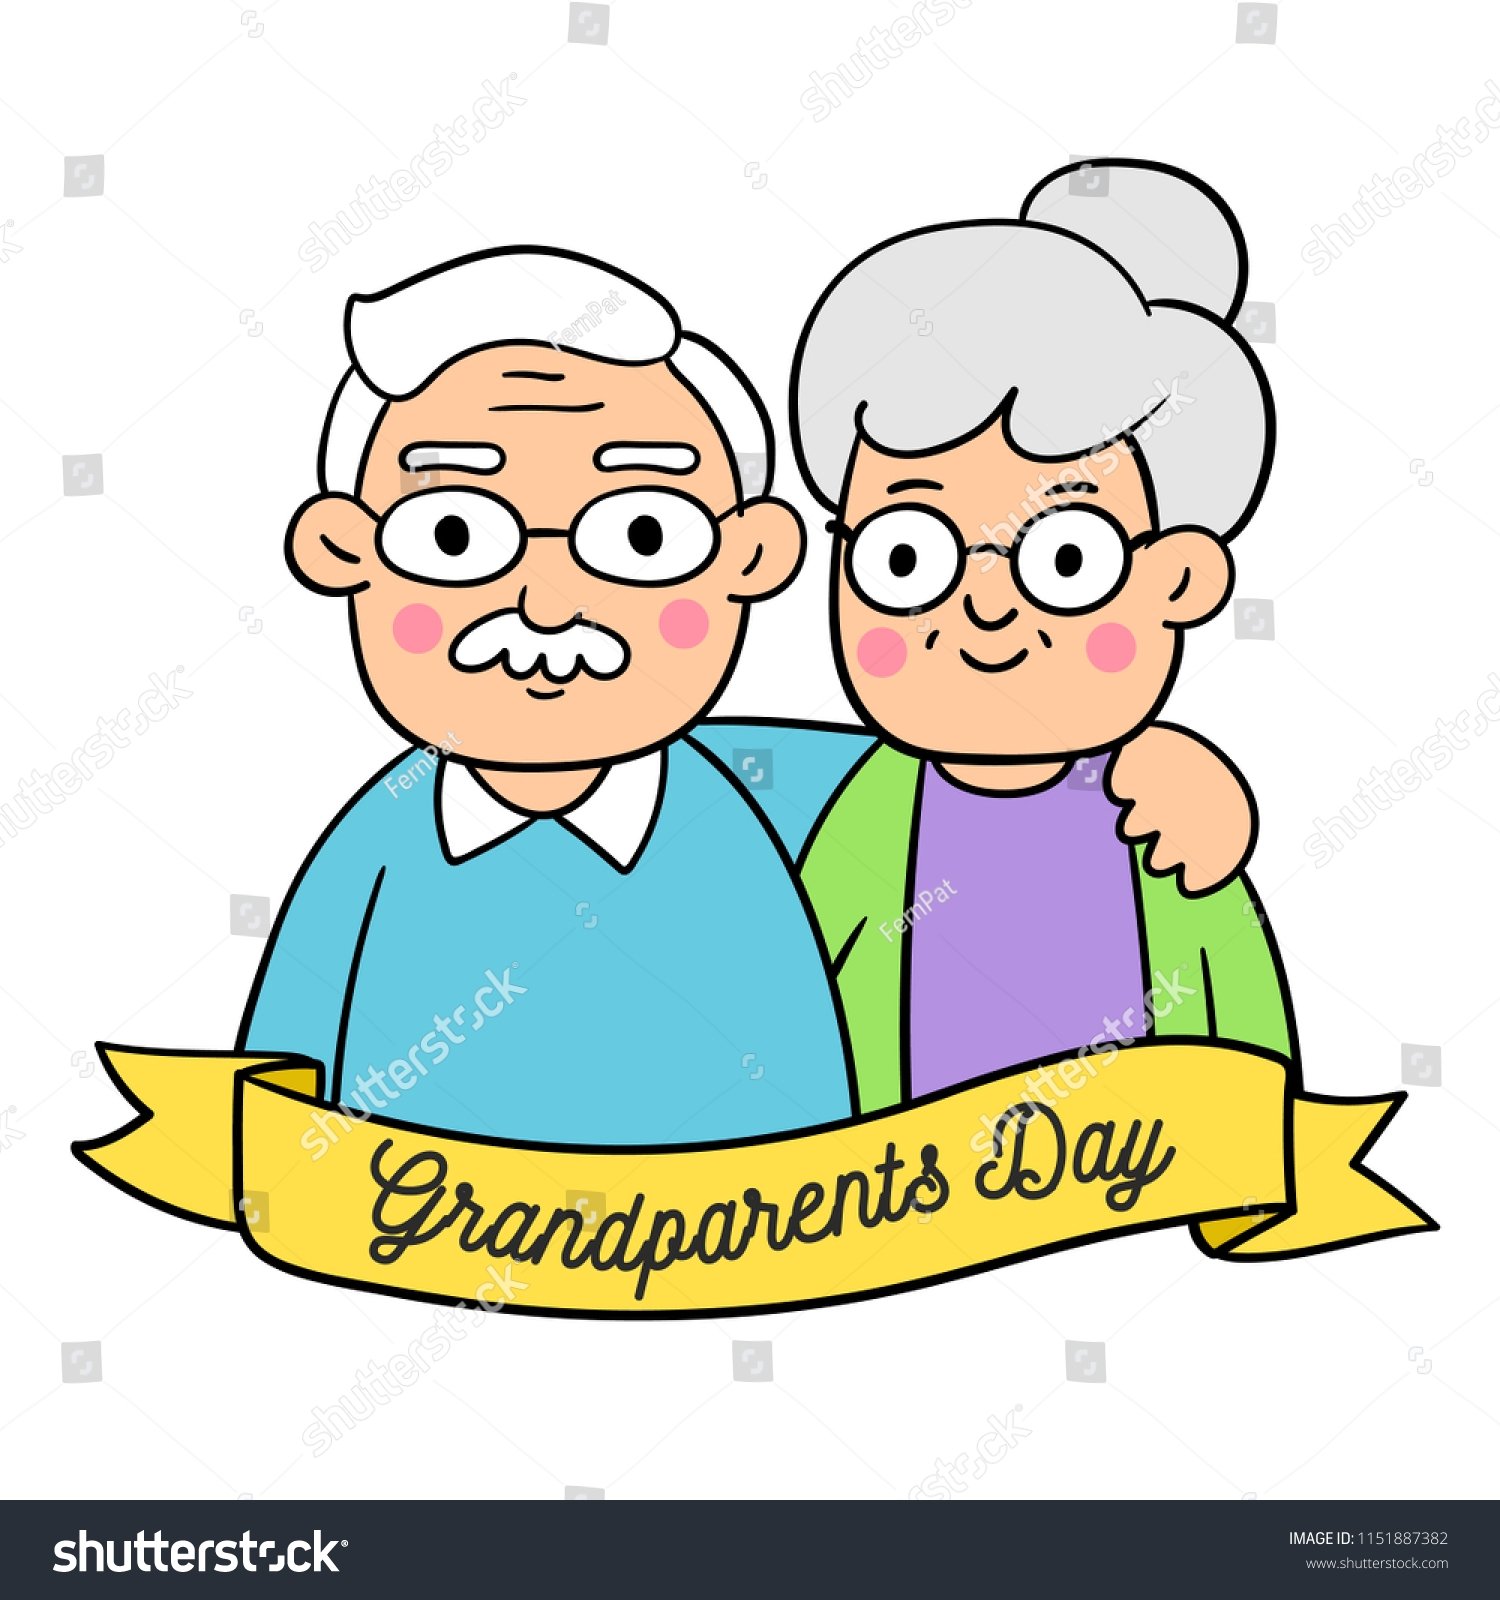 Do your grandparents. Рисунок на день рождения дедушке. Дедушка рисунок. Бабушка и дедушка. Рисунок дедушке на день рождения от внучки.